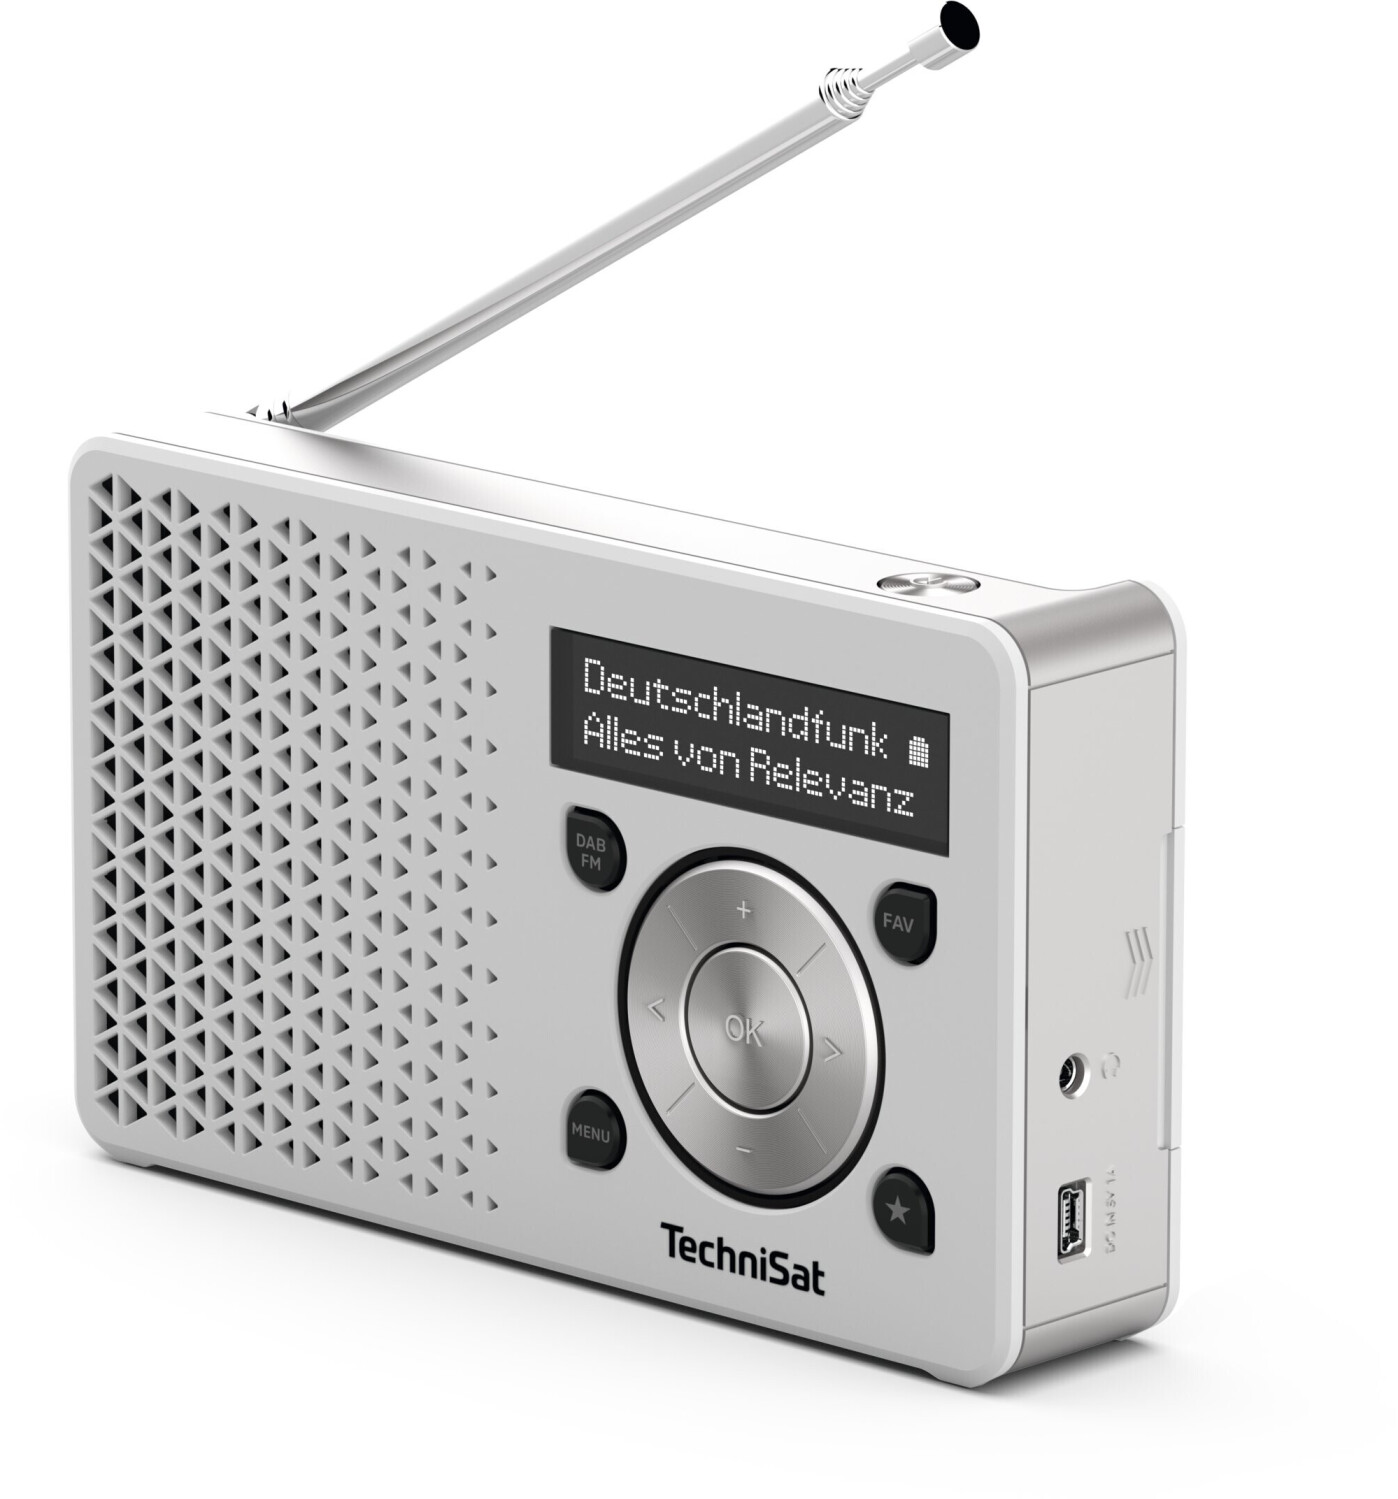 TechniSat Digitradio 1 54,99 | ab € weiß/silber bei Preisvergleich